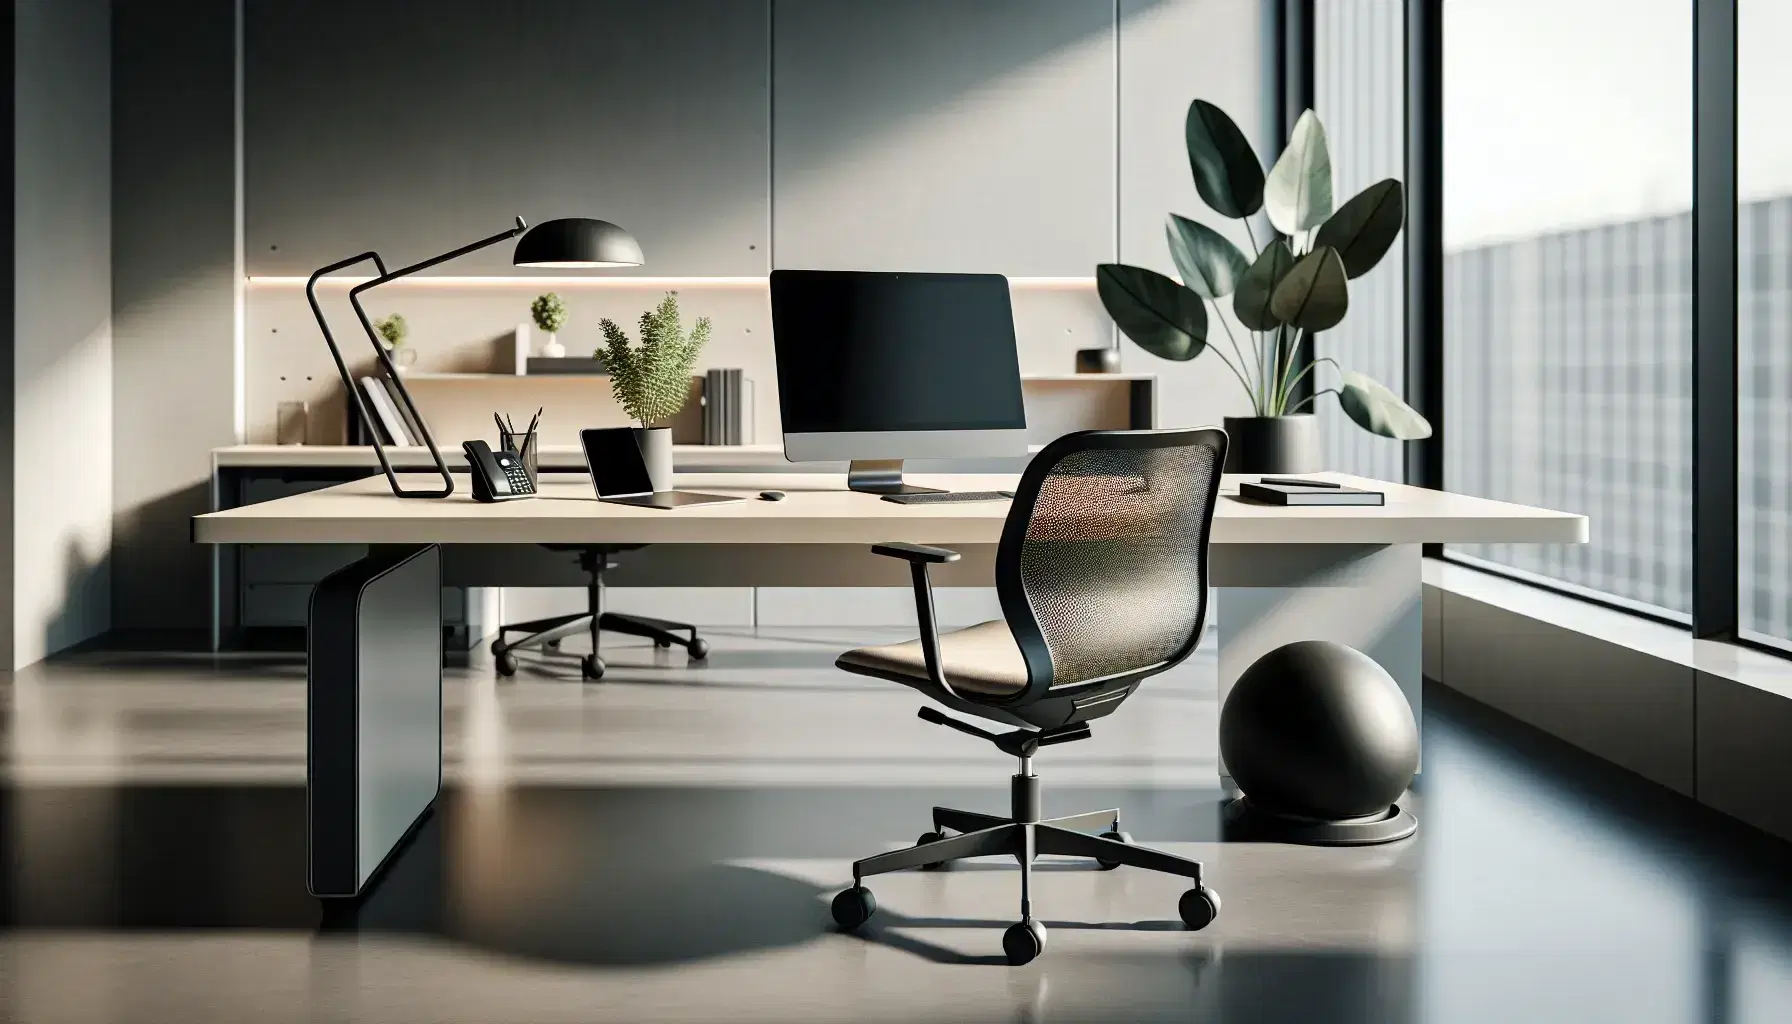 Oficina moderna y espaciosa con escritorio, silla ergonómica, laptop, teléfono inalámbrico y planta, iluminada por luz natural y artificial.